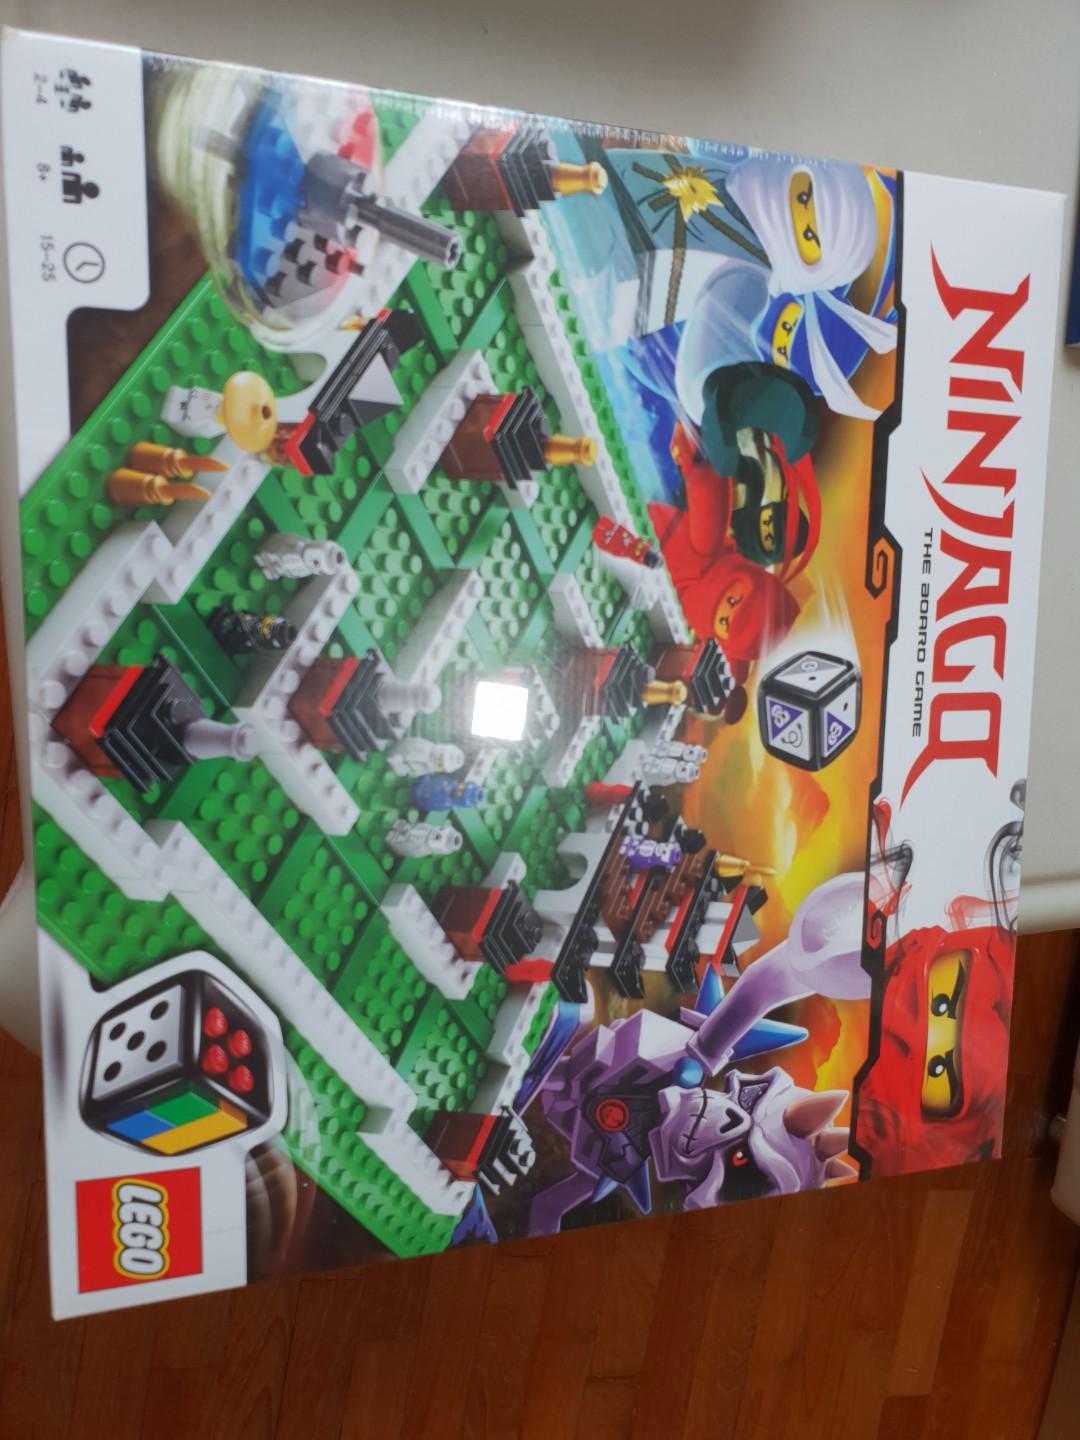 Lego games ninjago 3856